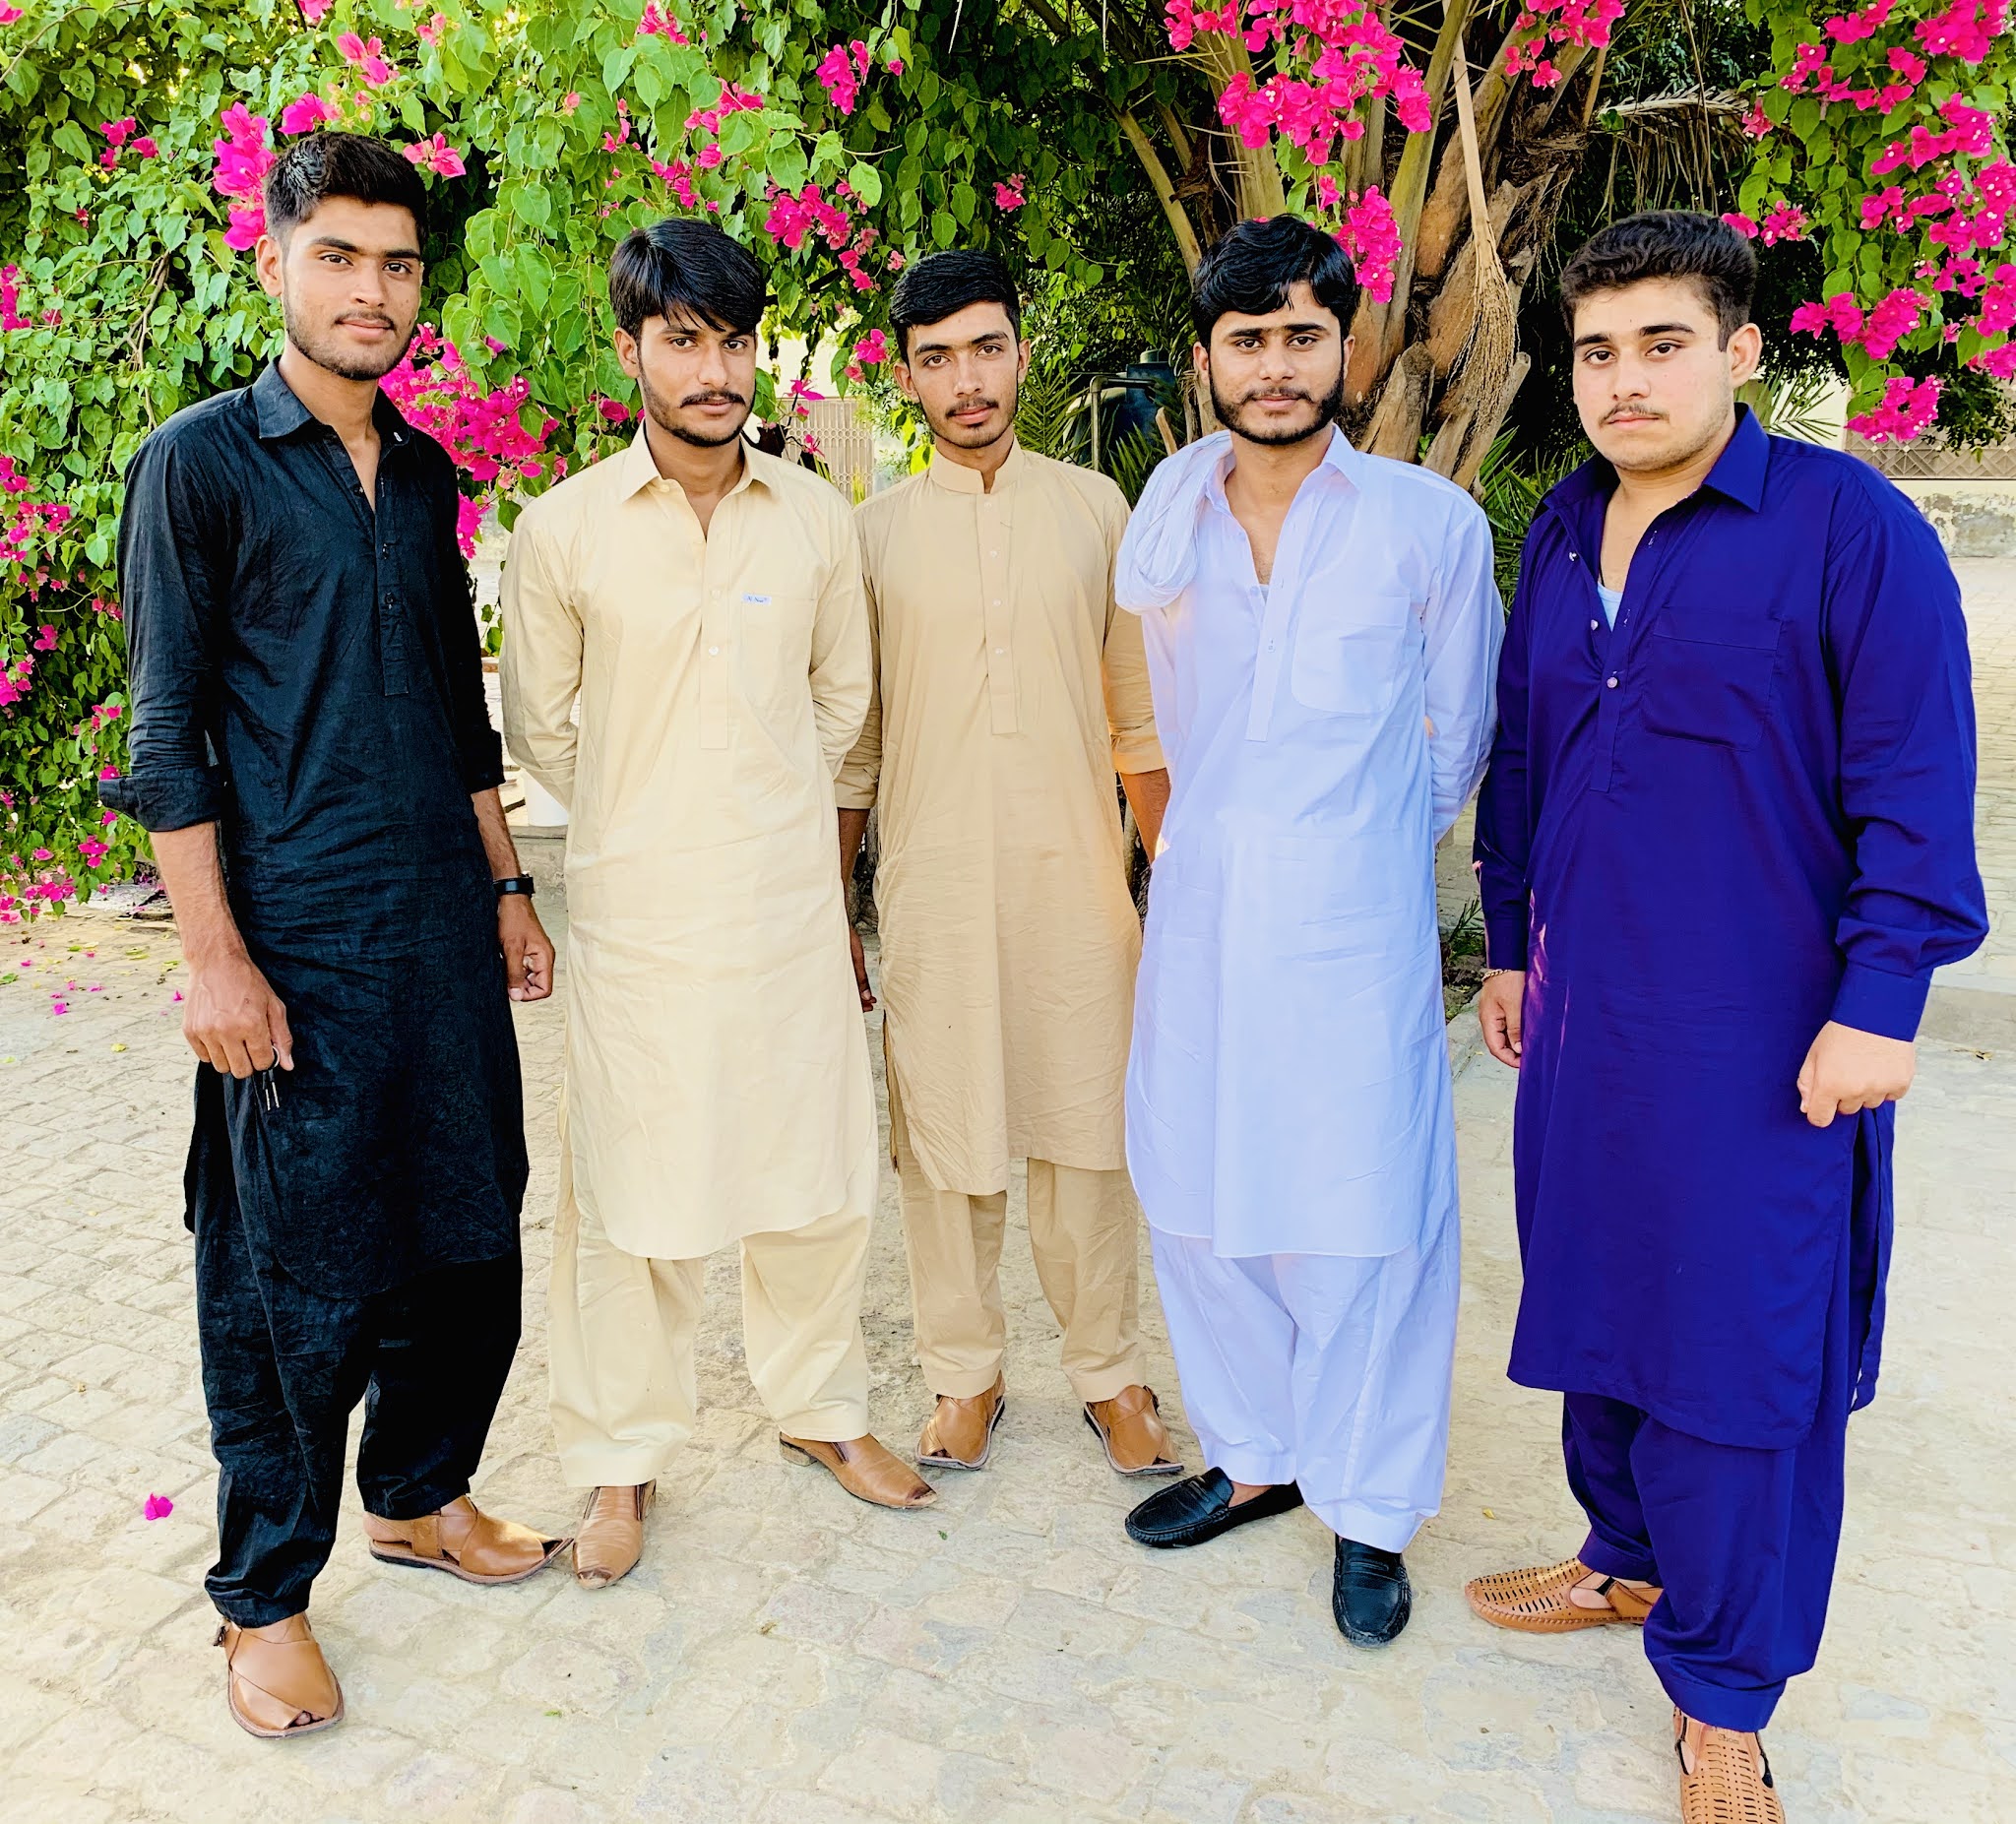 007 Group Chakwal on Eid Day 2019 Images at Bhubhar Chakwal